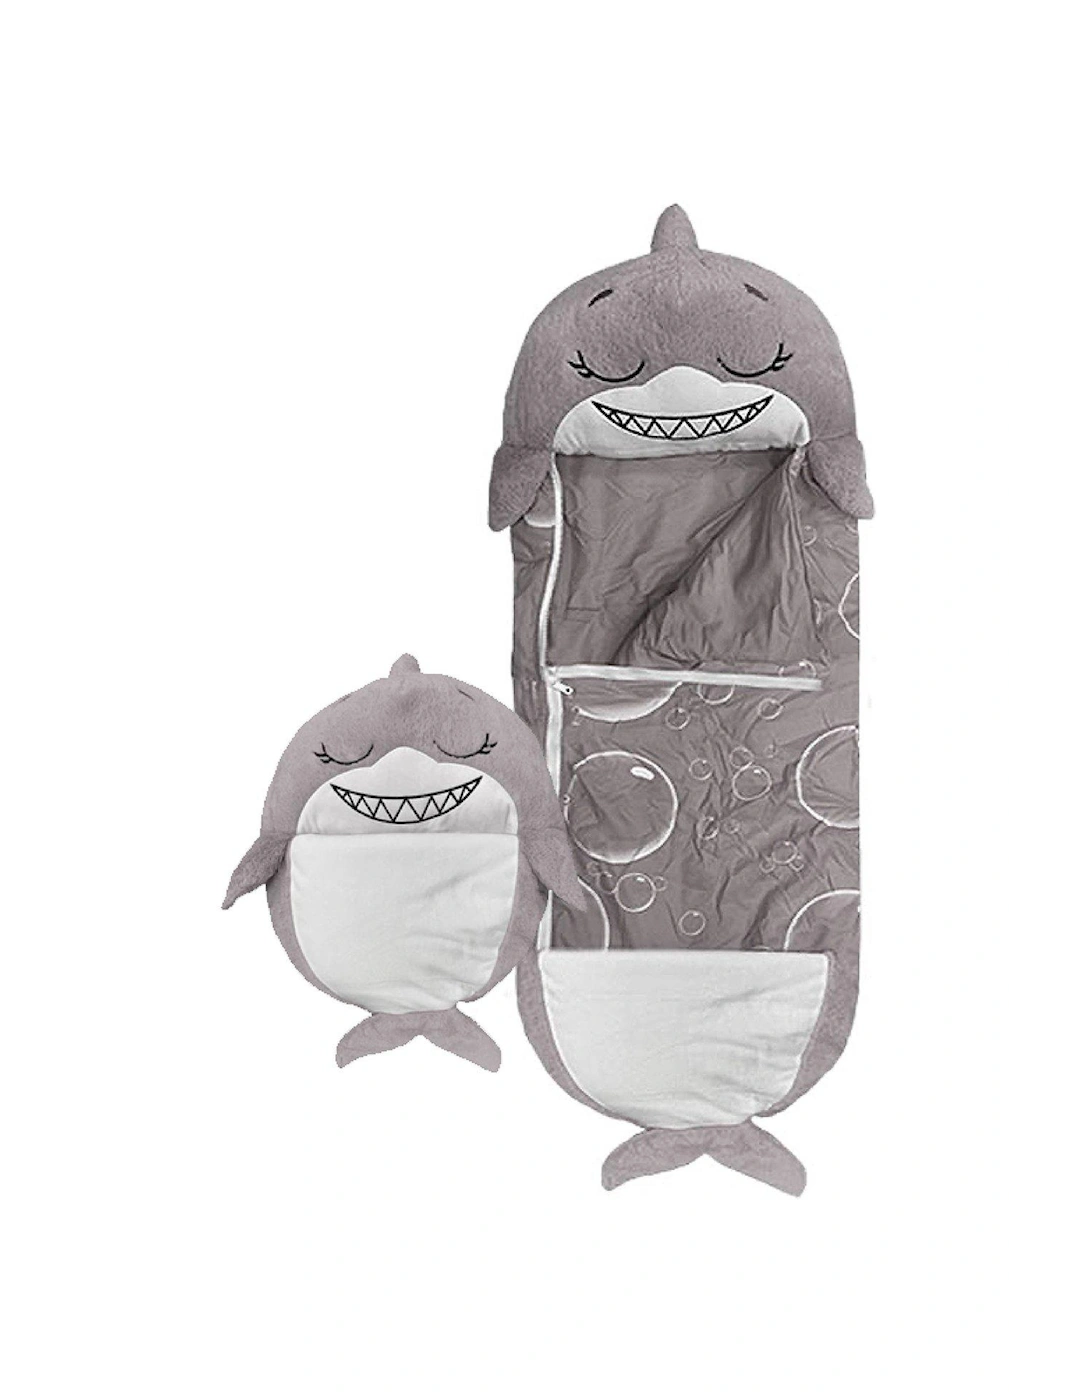 Grey Shark Sleeping Bag - Large, 2 of 1